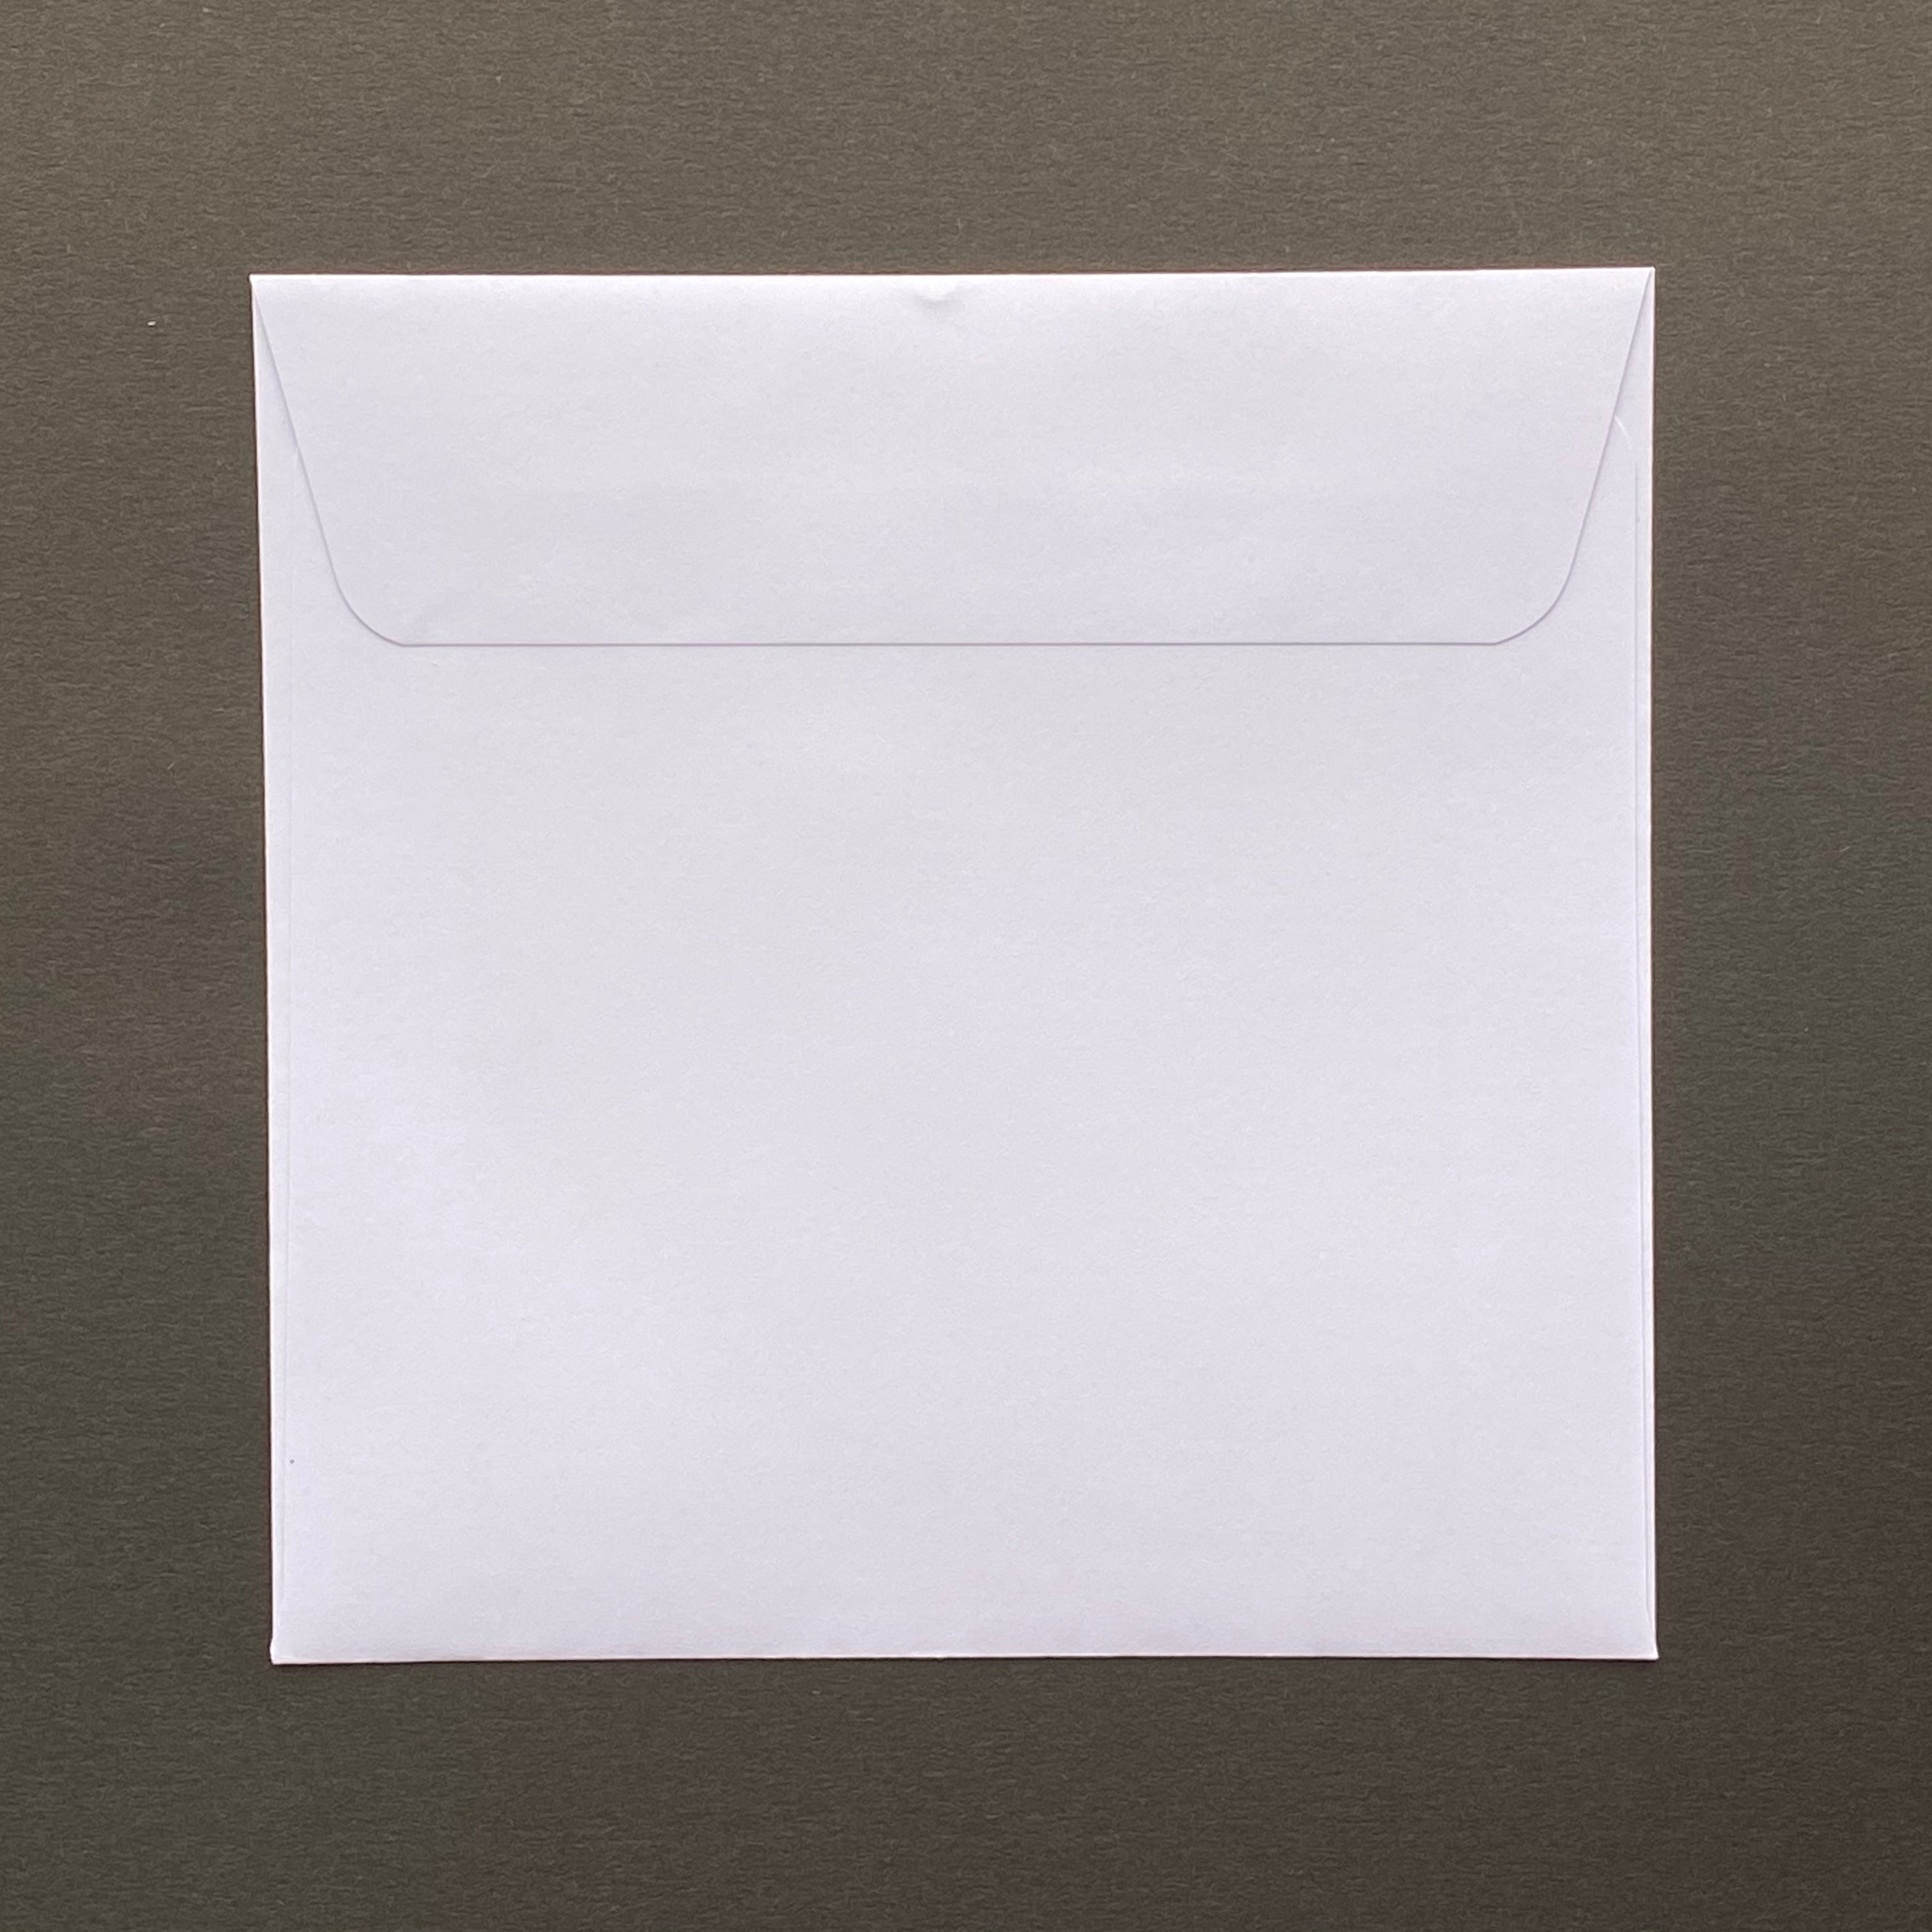 110mm square white envelopes